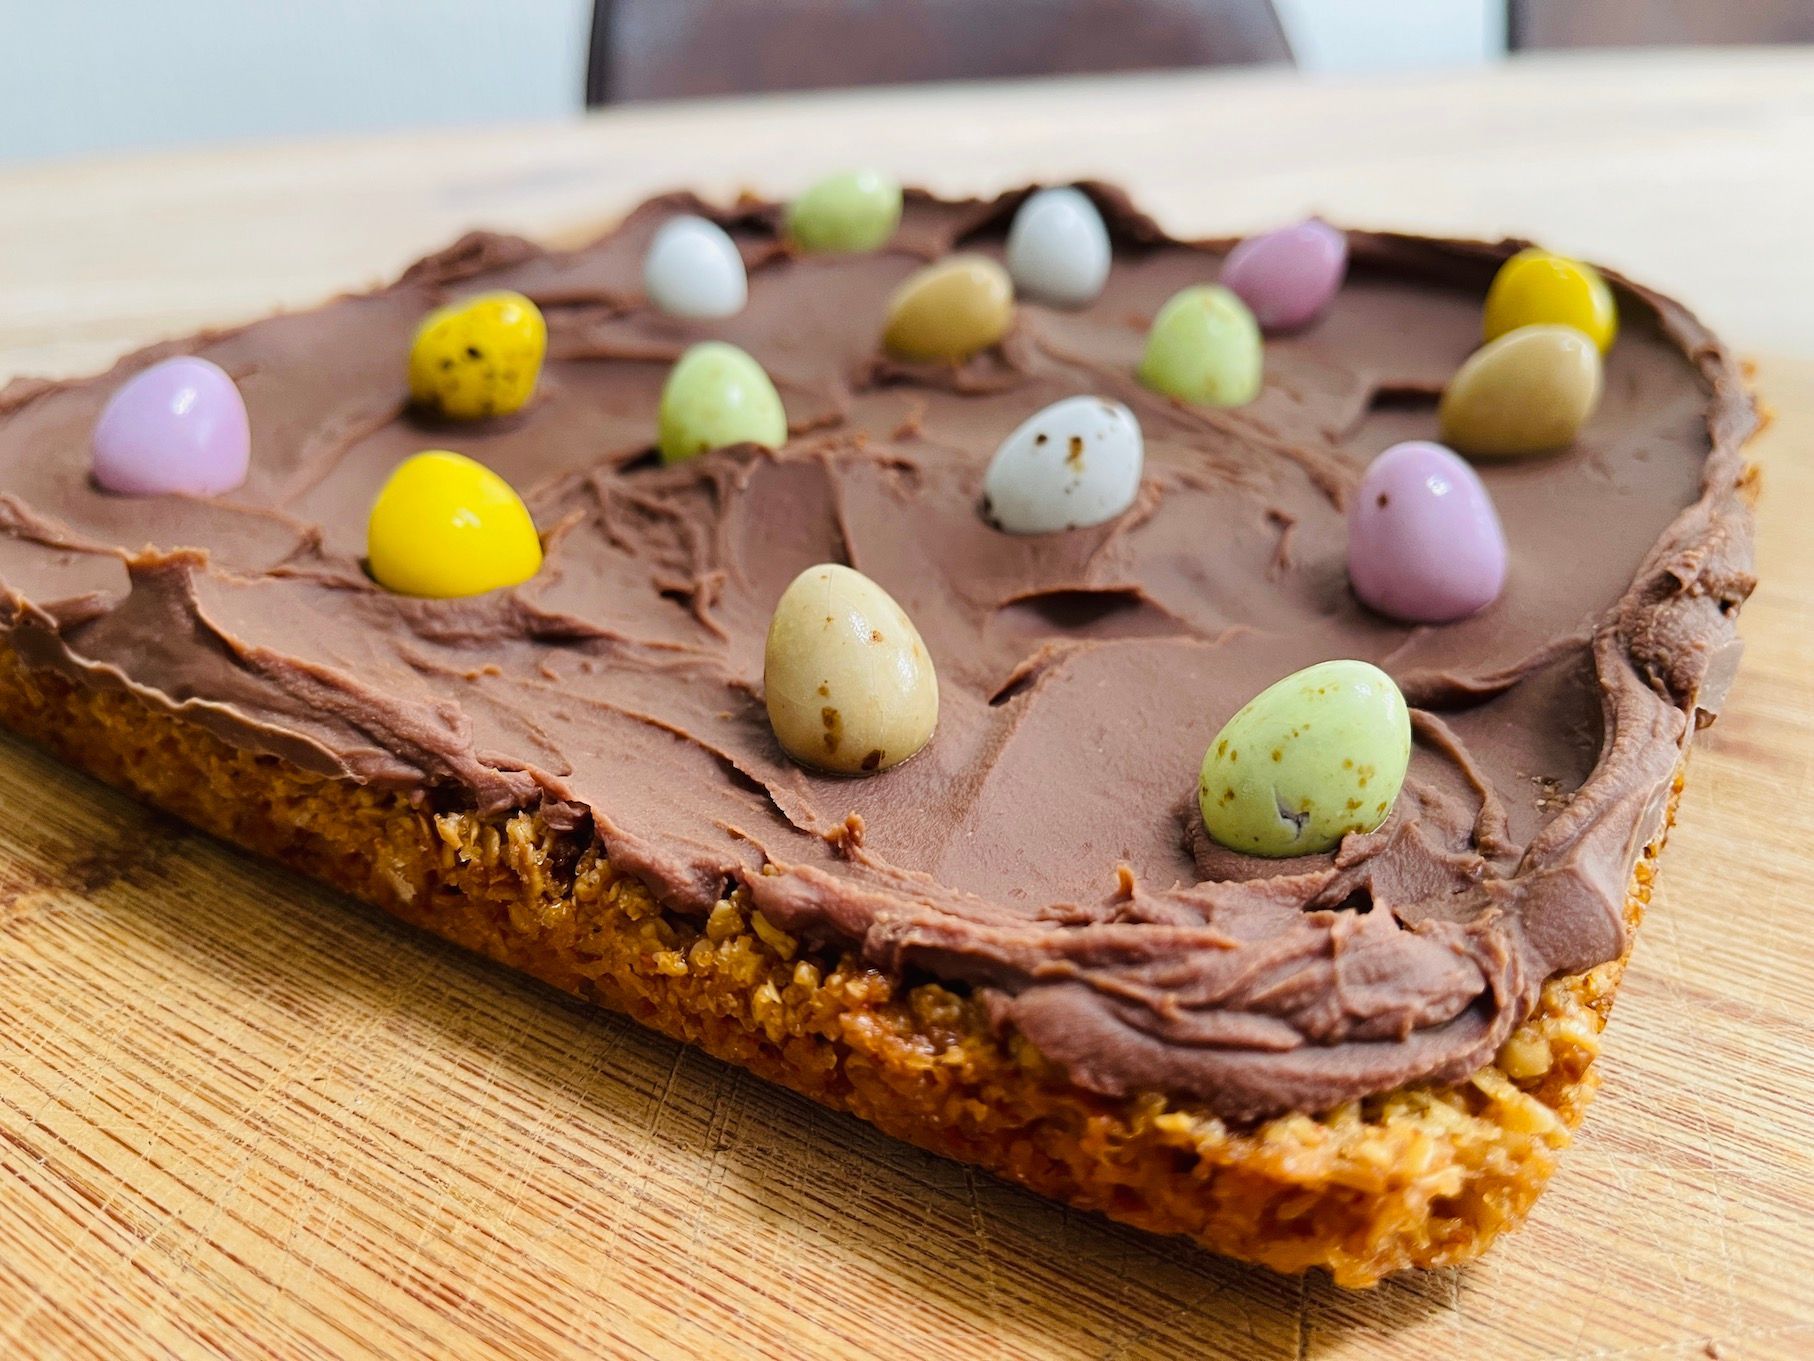 Recept; Havermout, chocolade koeken voor Pasen